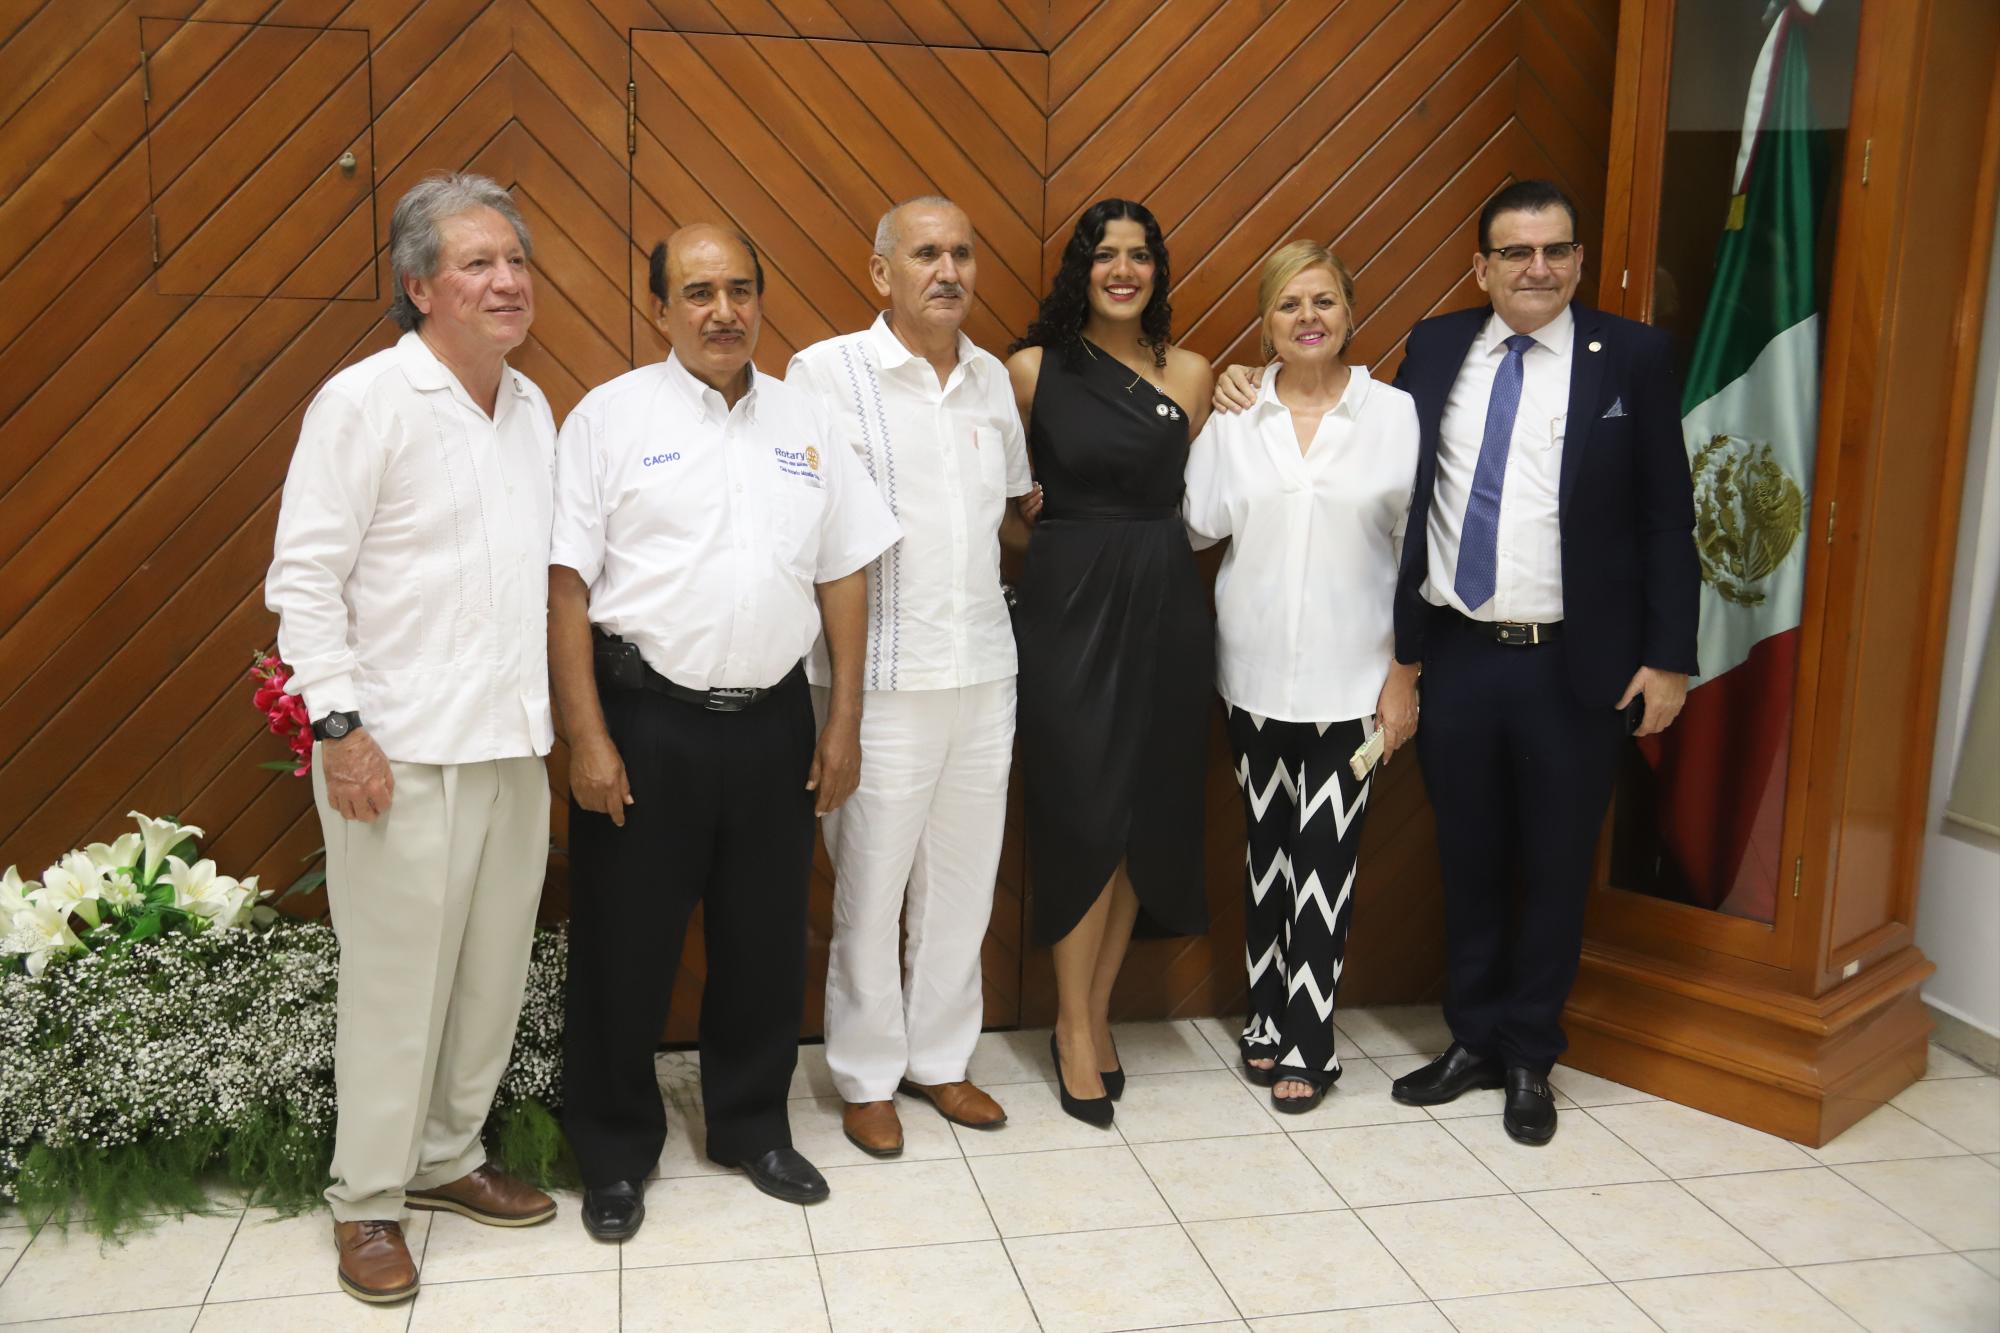 $!La nueva presidenta entre integrantes rotarios, Juan Llausás, José Sandoval, Humberto Pini Bernal, Edna Ruth Martínez y Martín Sánchez.